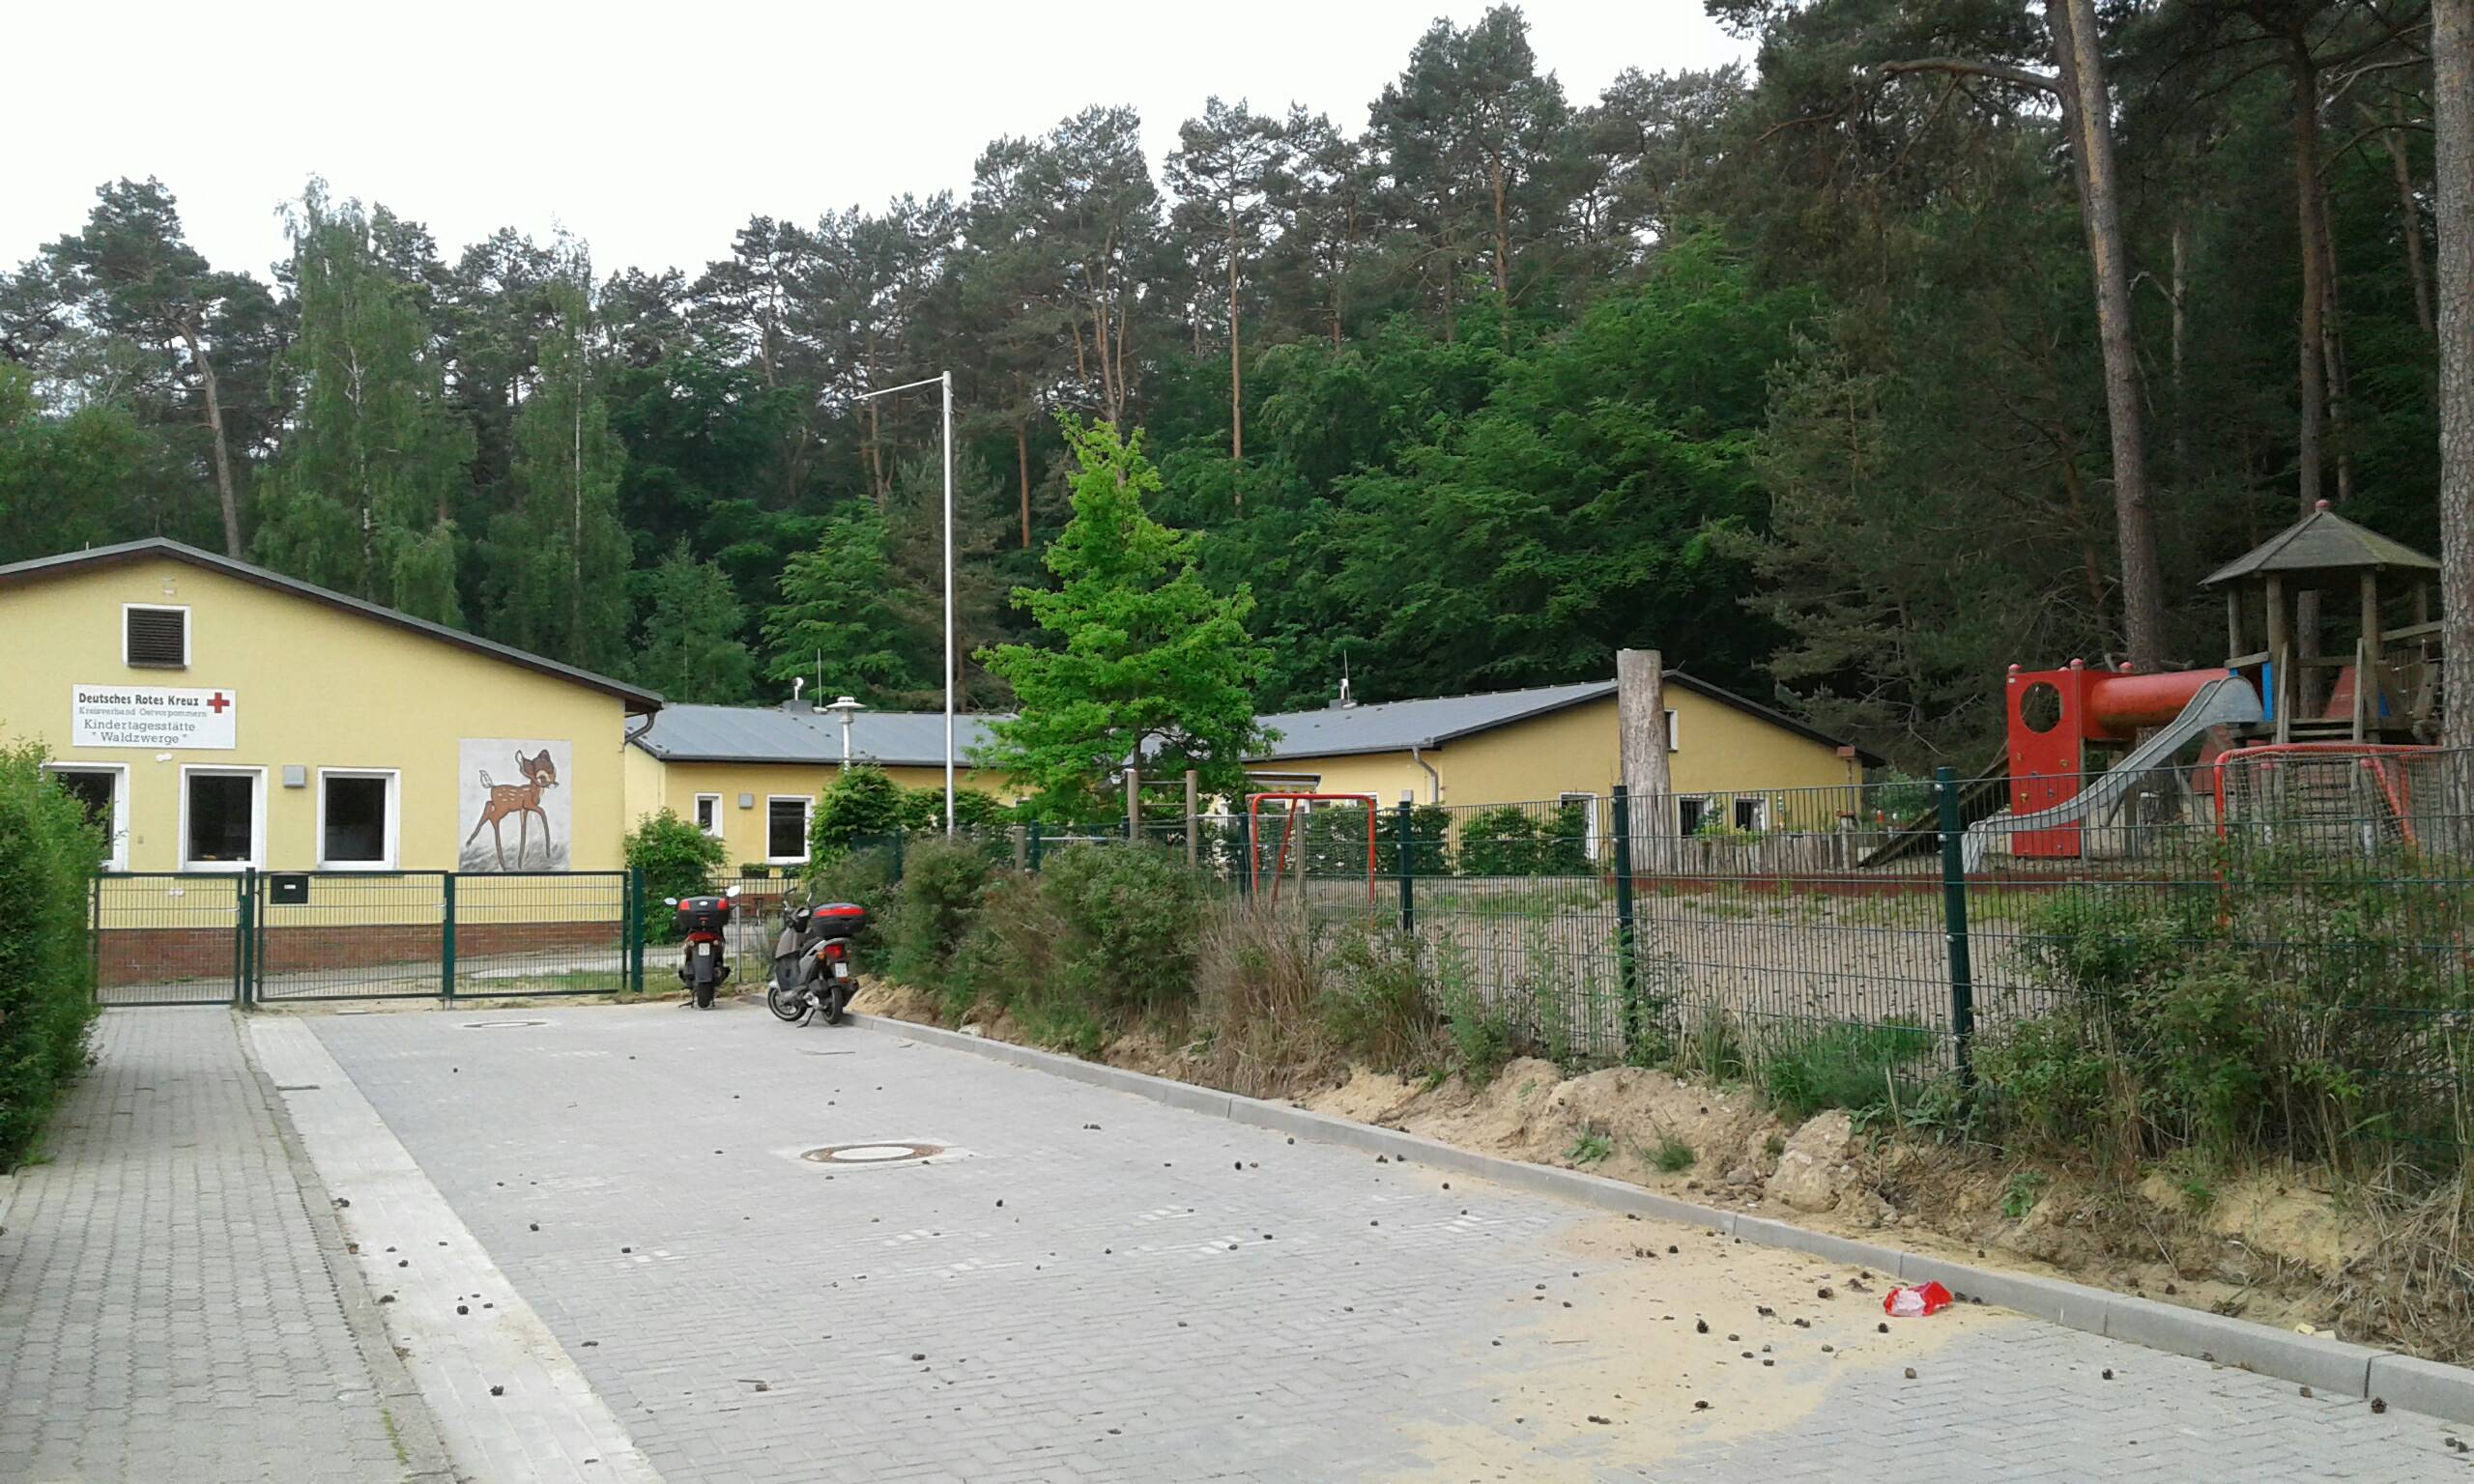 Bild 1 Kindertagesstätte Waldzwerge des DRK-KV OVP e.V. in Bansin